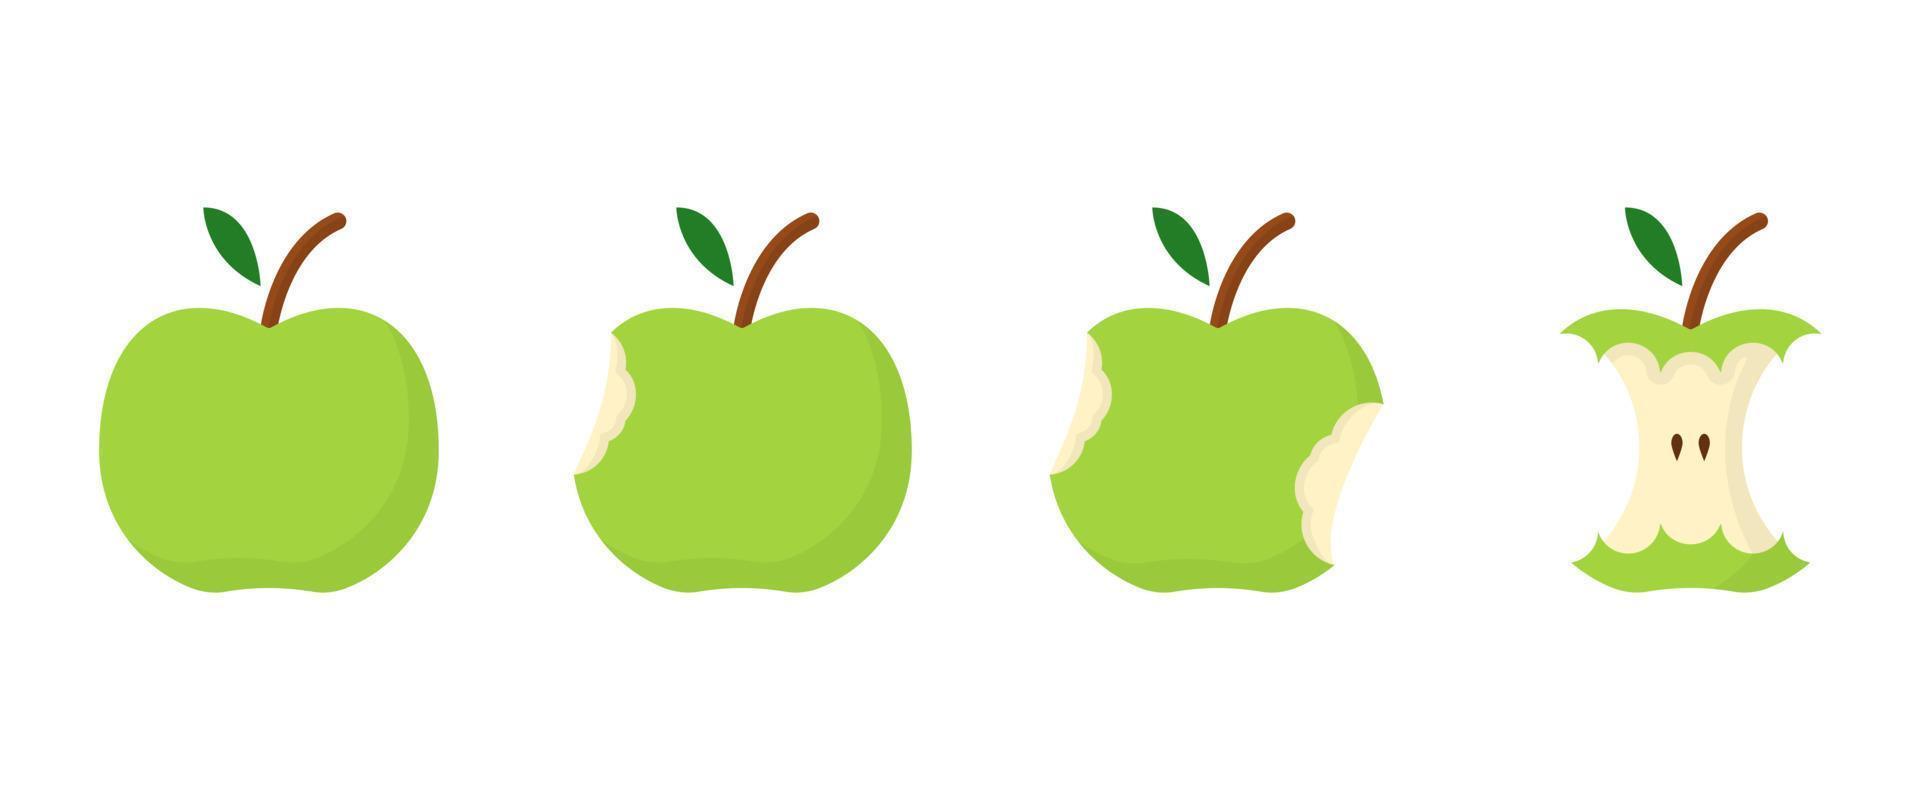 concetto di fase del morso della mela verde. passo di mangiare la mela da intera a metà e senza torsolo. cibo biologico fresco sano. illustrazione vettoriale isolata.